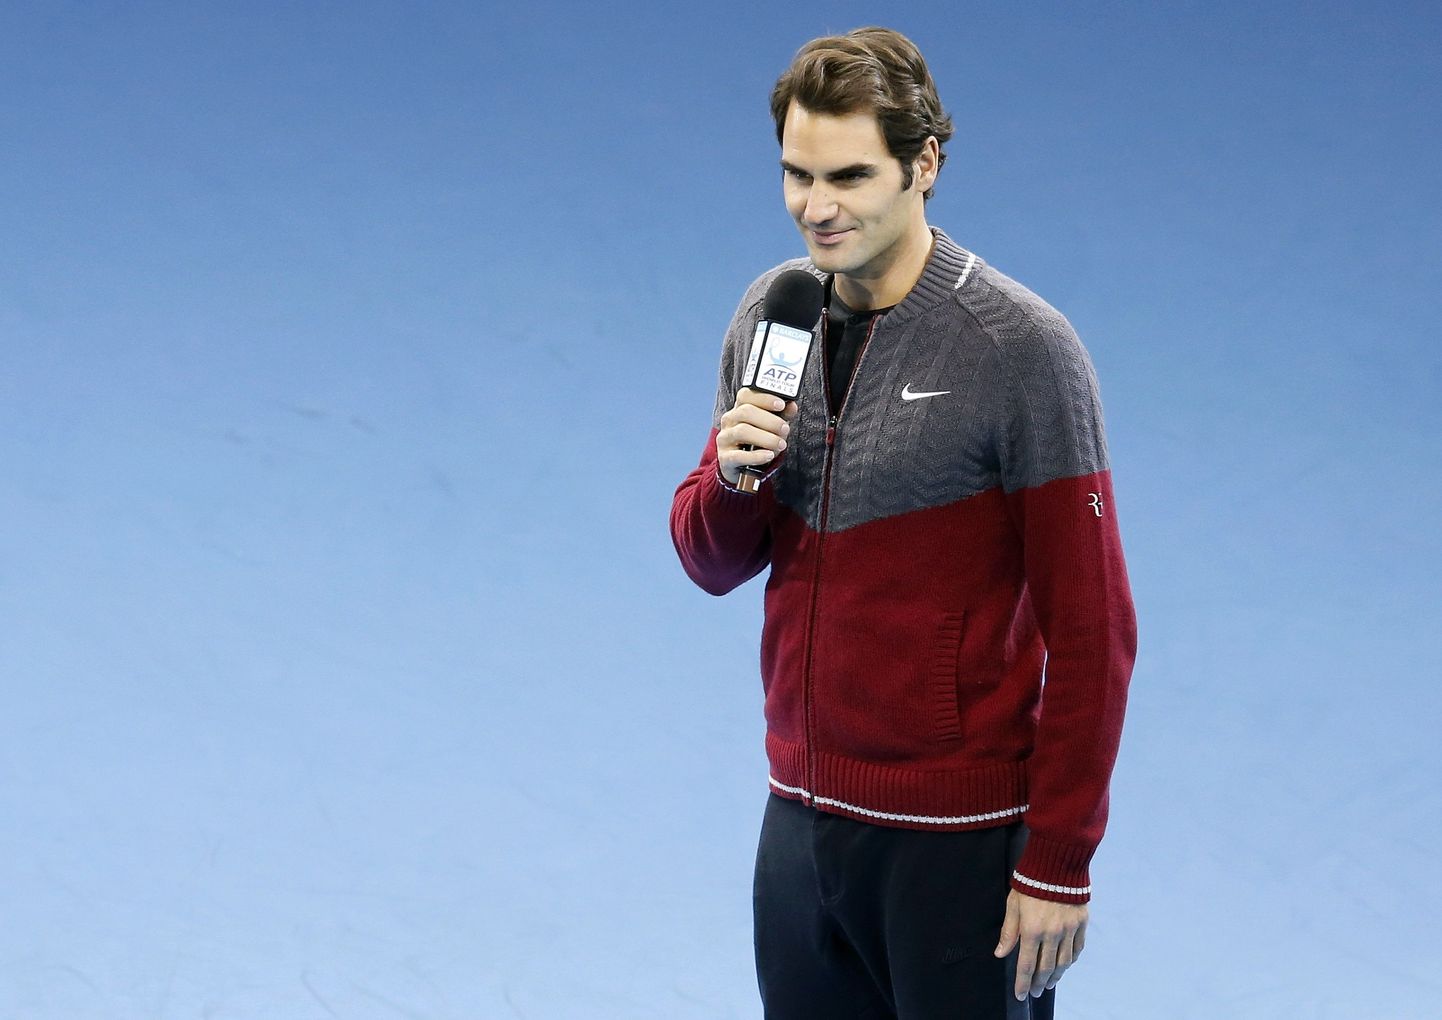 Roger Federer teatas pettunud Londoni publikule, et ei saa aastalõputurniiri finaalis mängida.